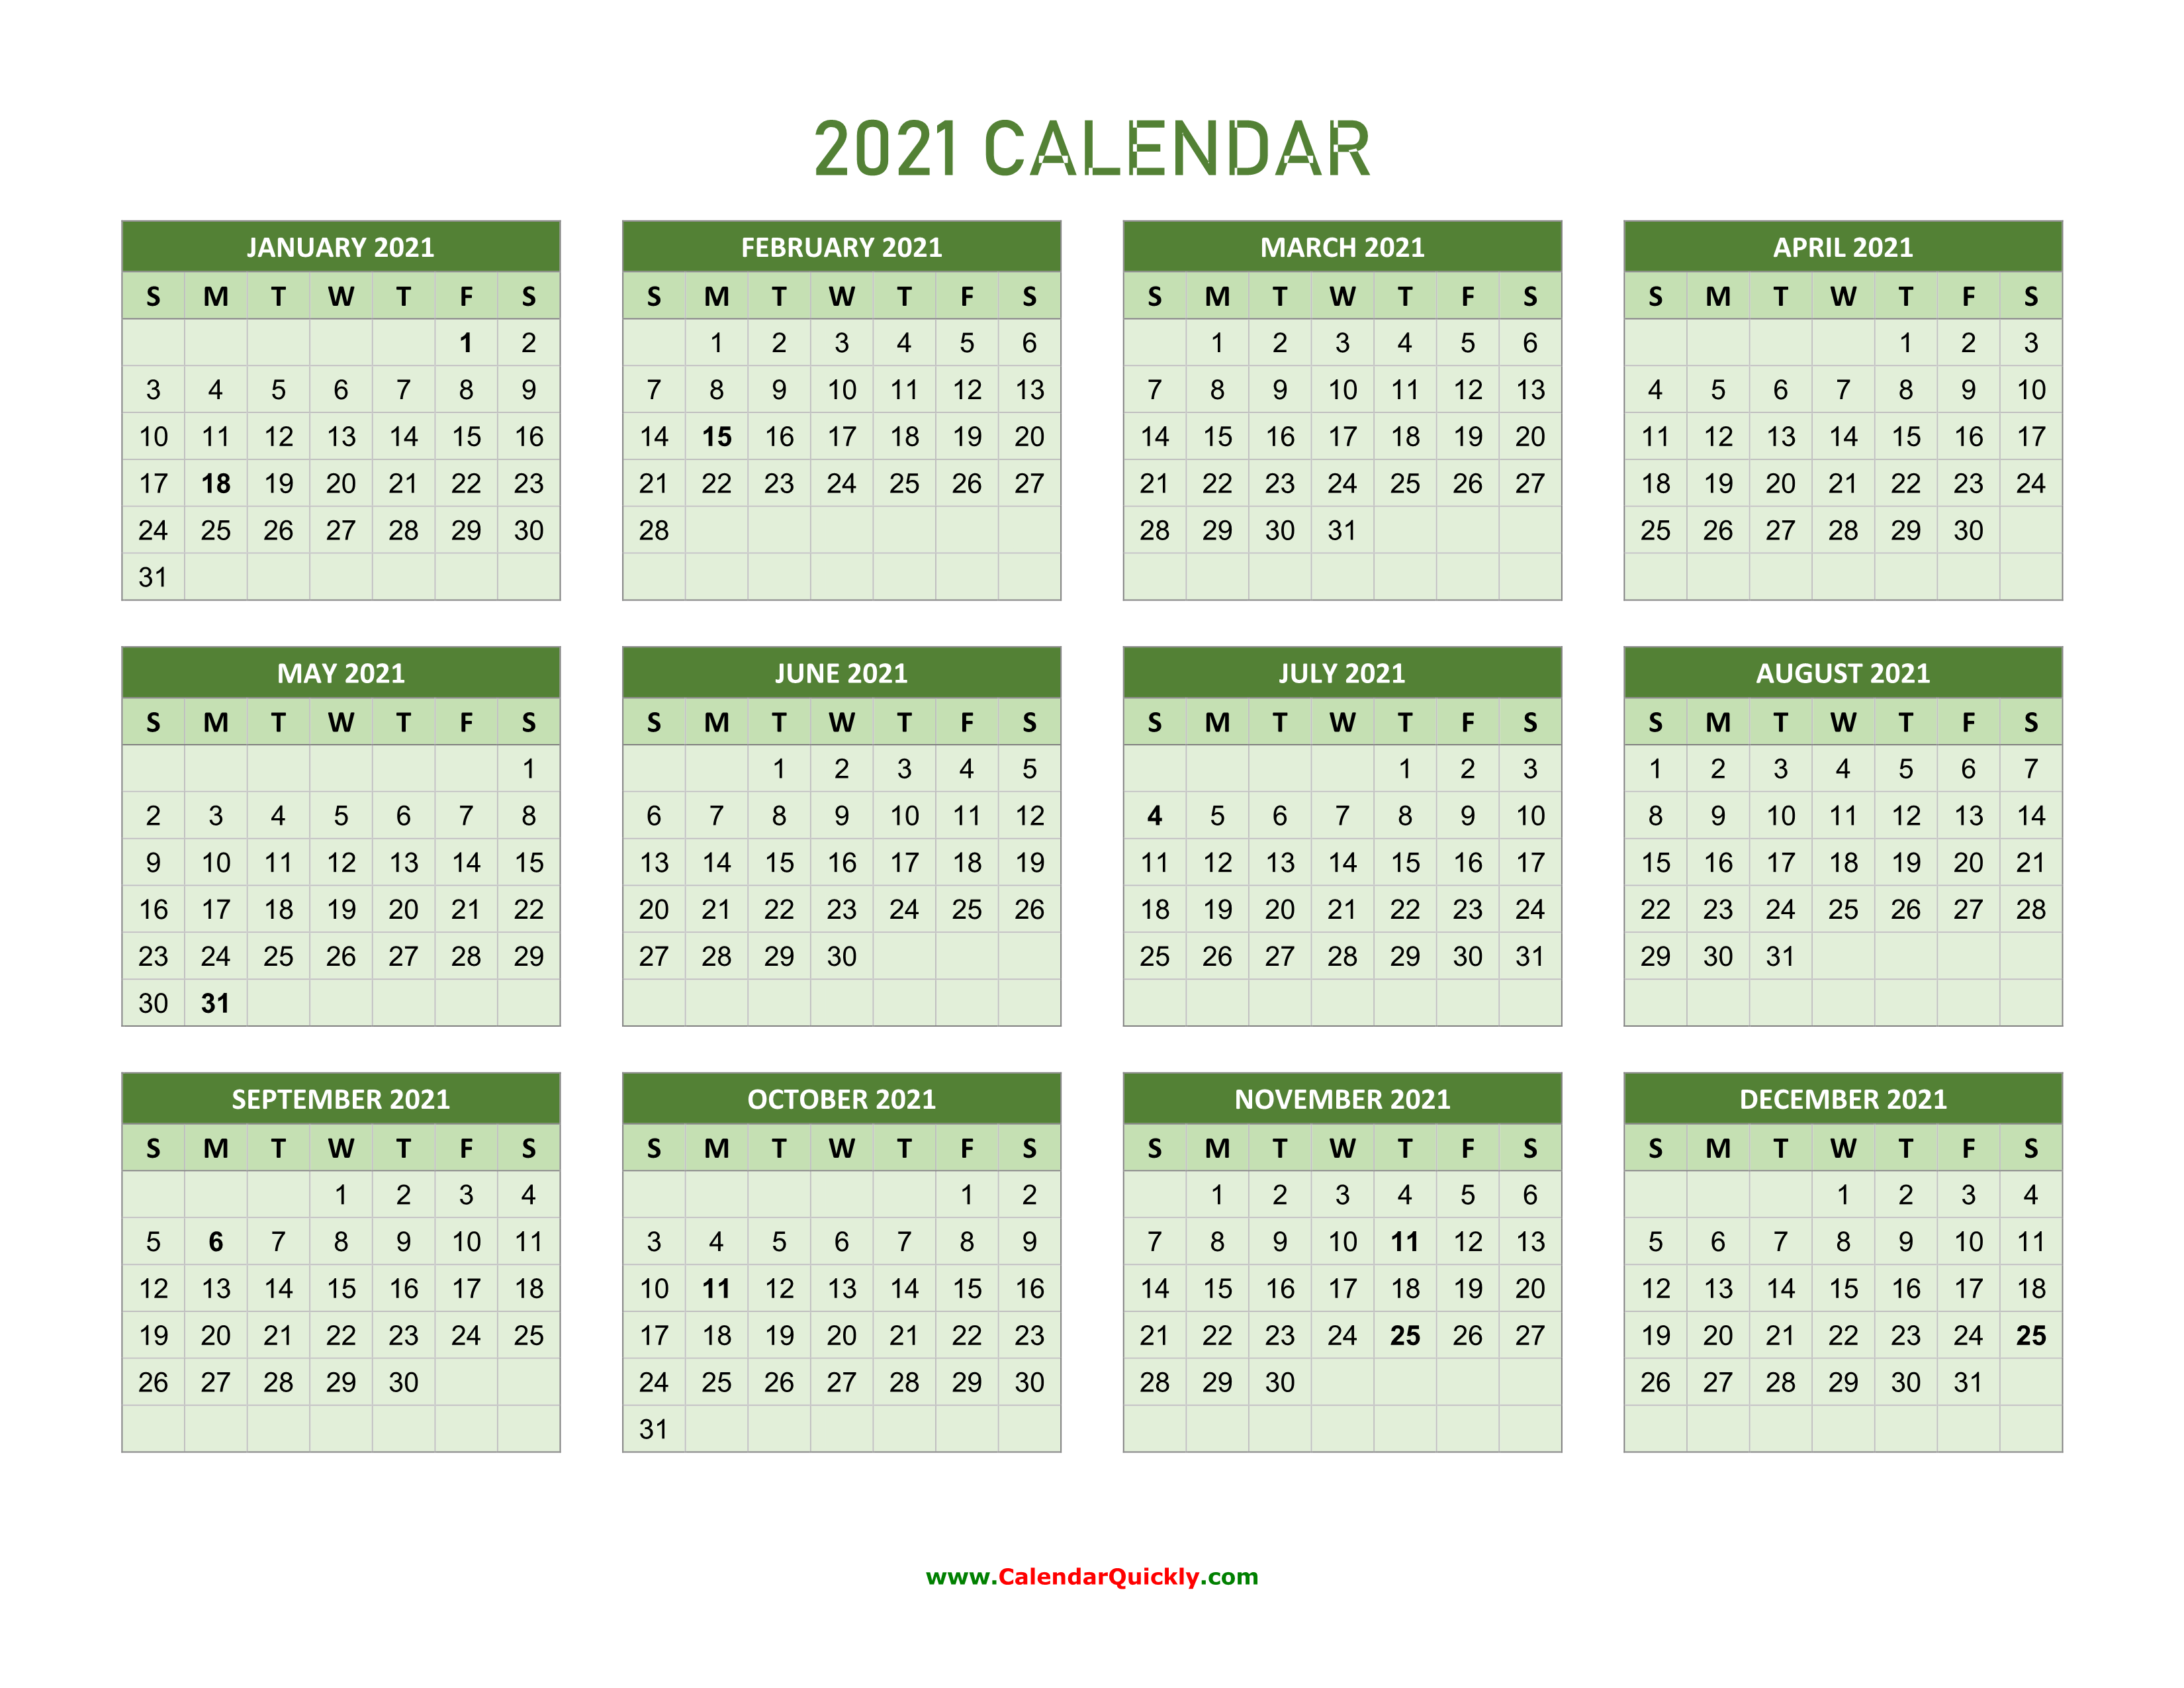 Календарь 2024 март апрель месяц